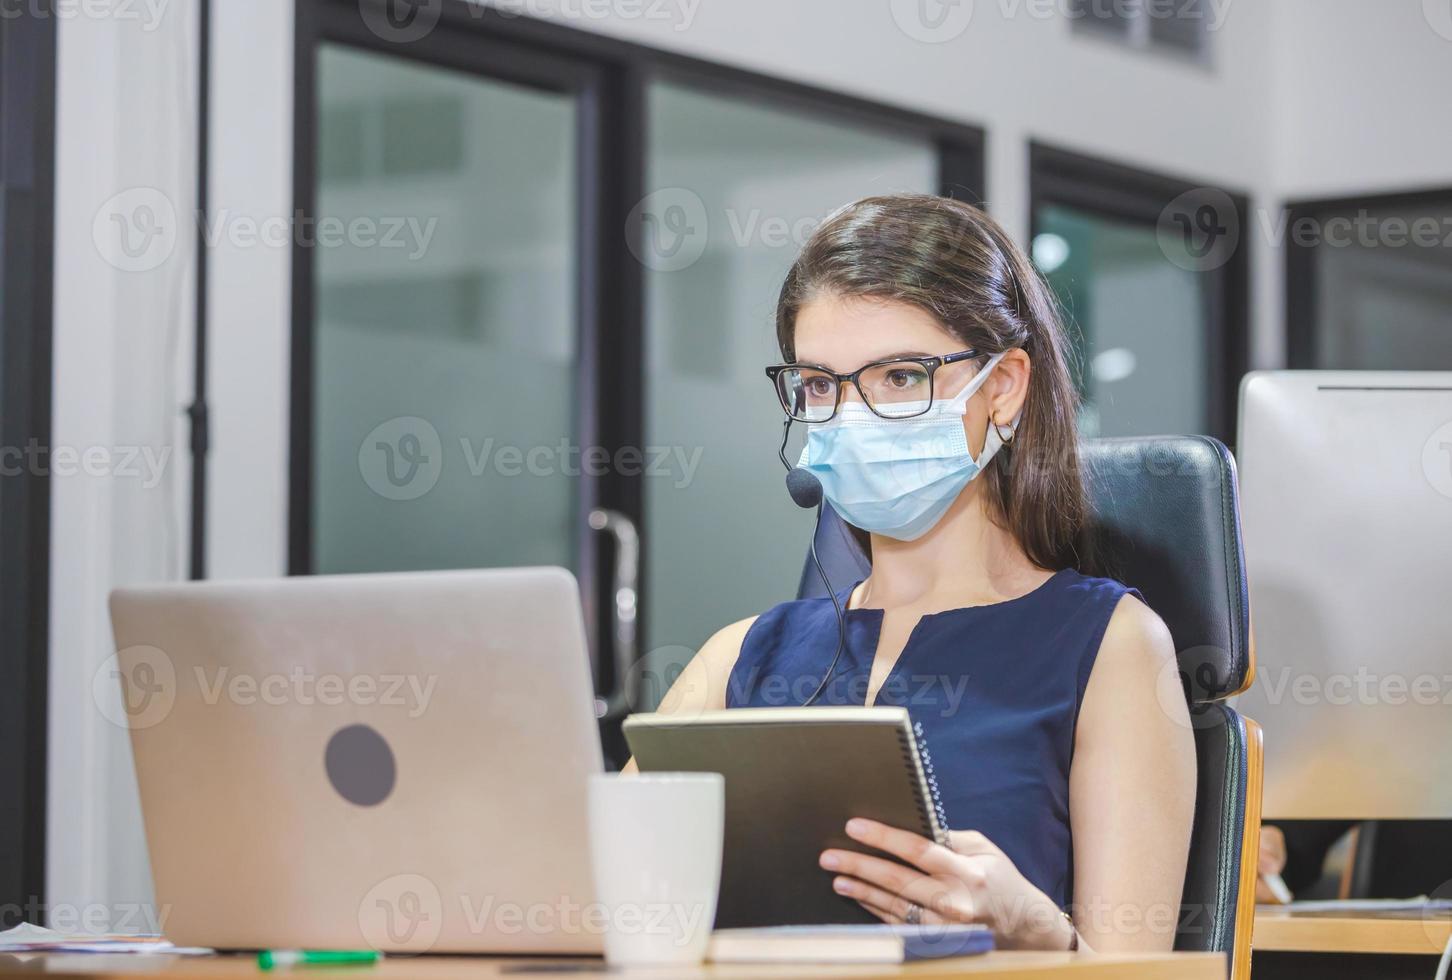 operatore telefonico giovane donna con auricolare indossa maschera facciale di protezione contro il coronavirus, team esecutivo del servizio clienti che lavora in ufficio foto